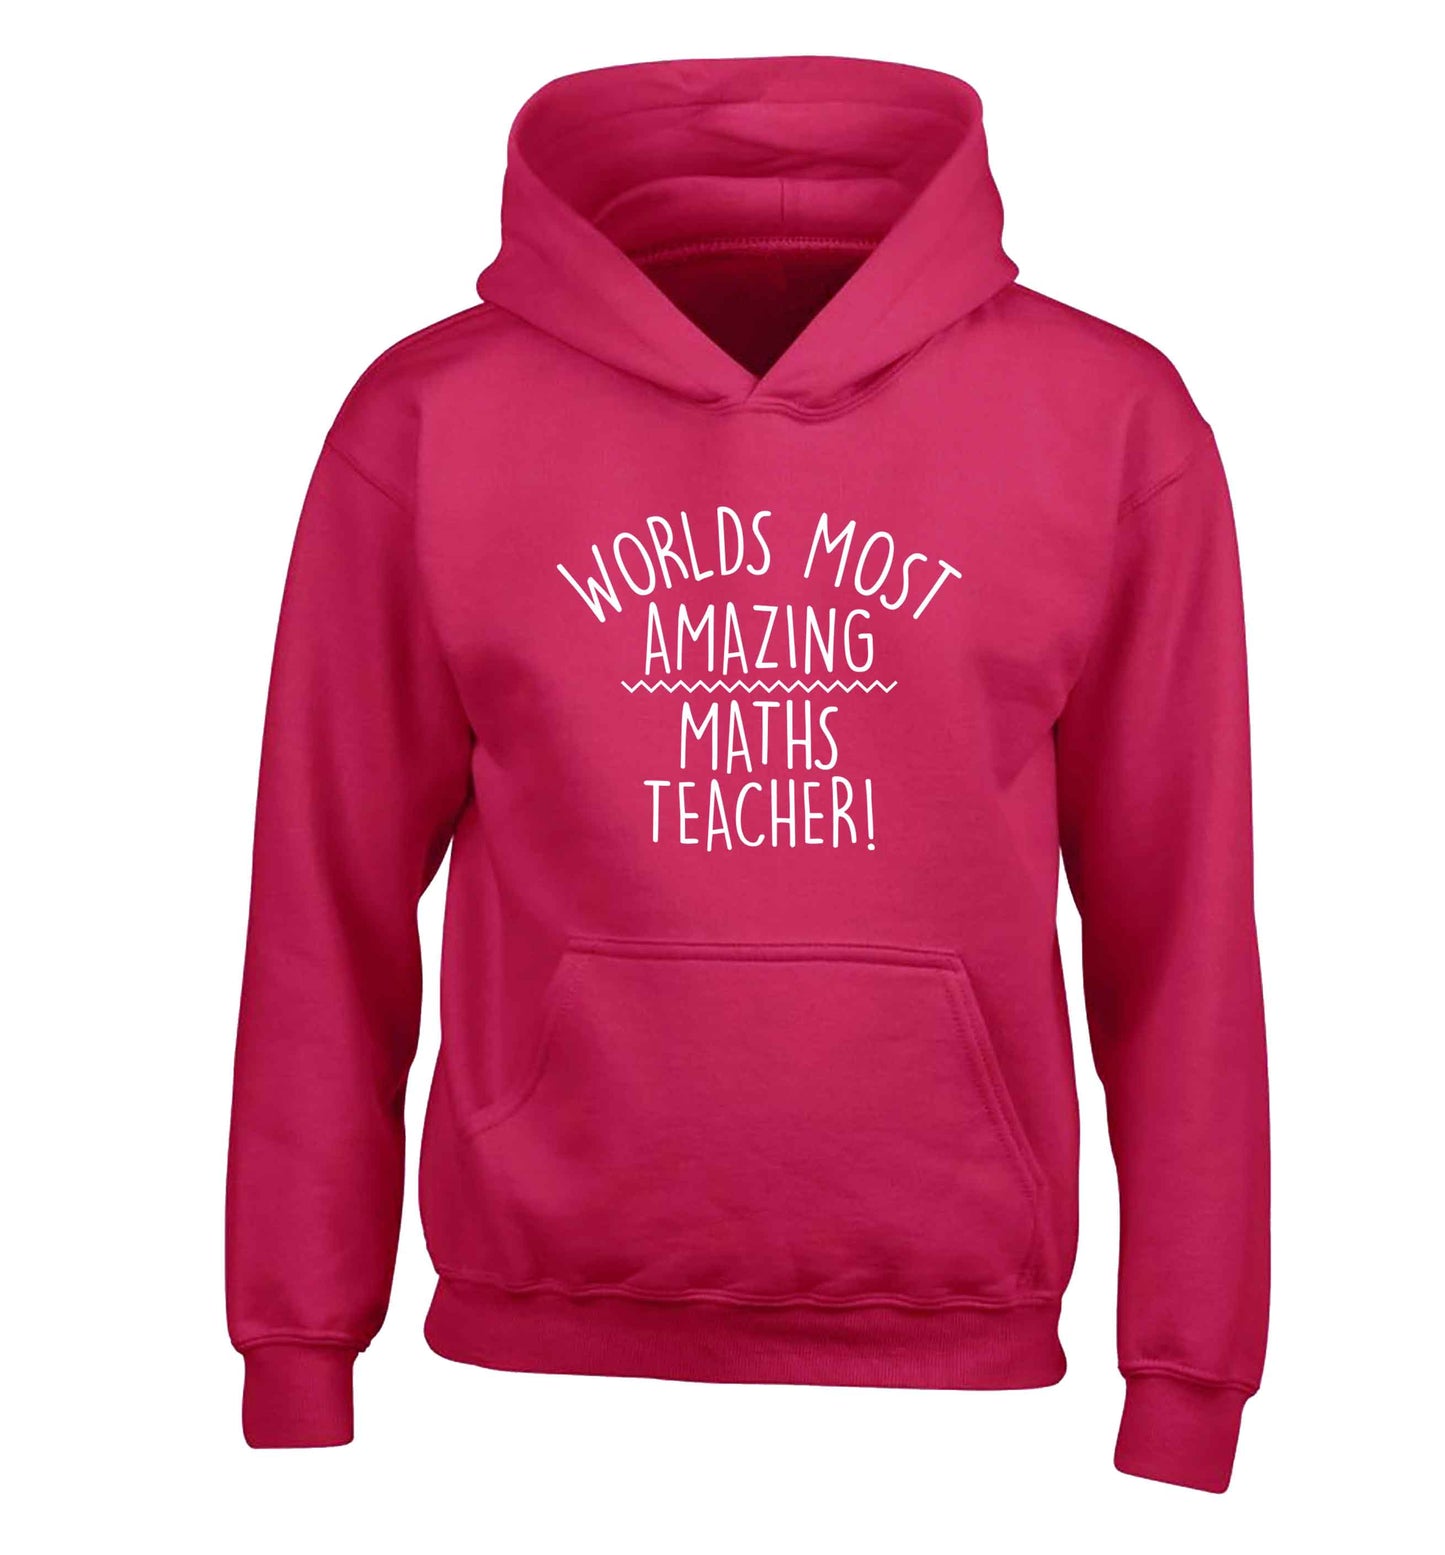 Worlds most amazing maths teacher children's pink hoodie 12-13 Years